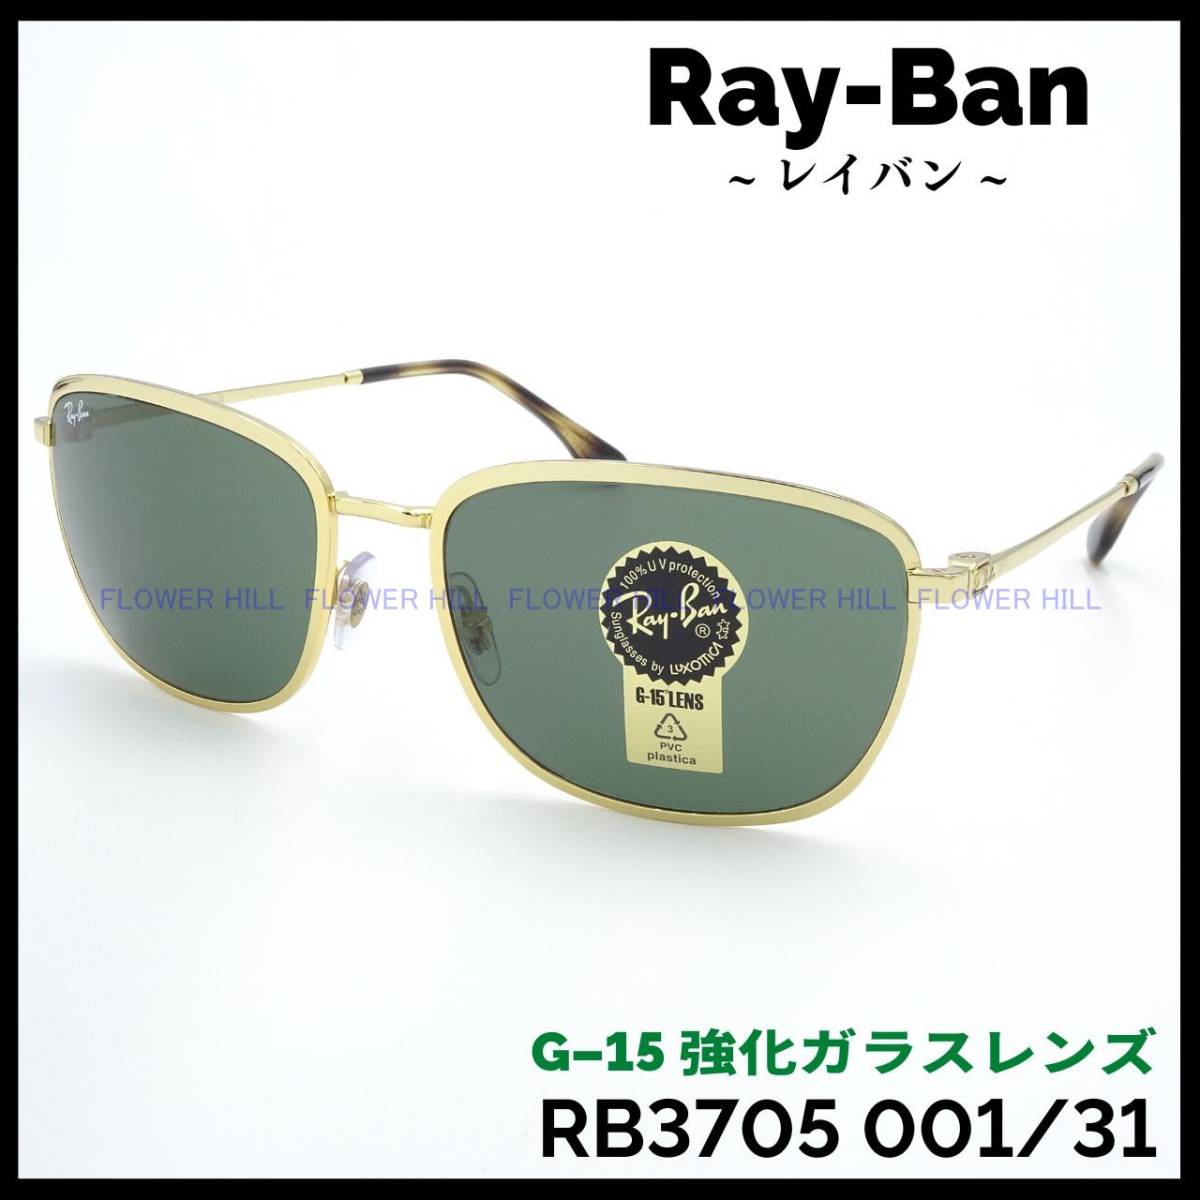 【新品・送料無料】レイバン Ray-Ban サングラス メタルフレーム RB3705 001/31 ゴールド G-15レンズ イタリア製 メンズ レディース